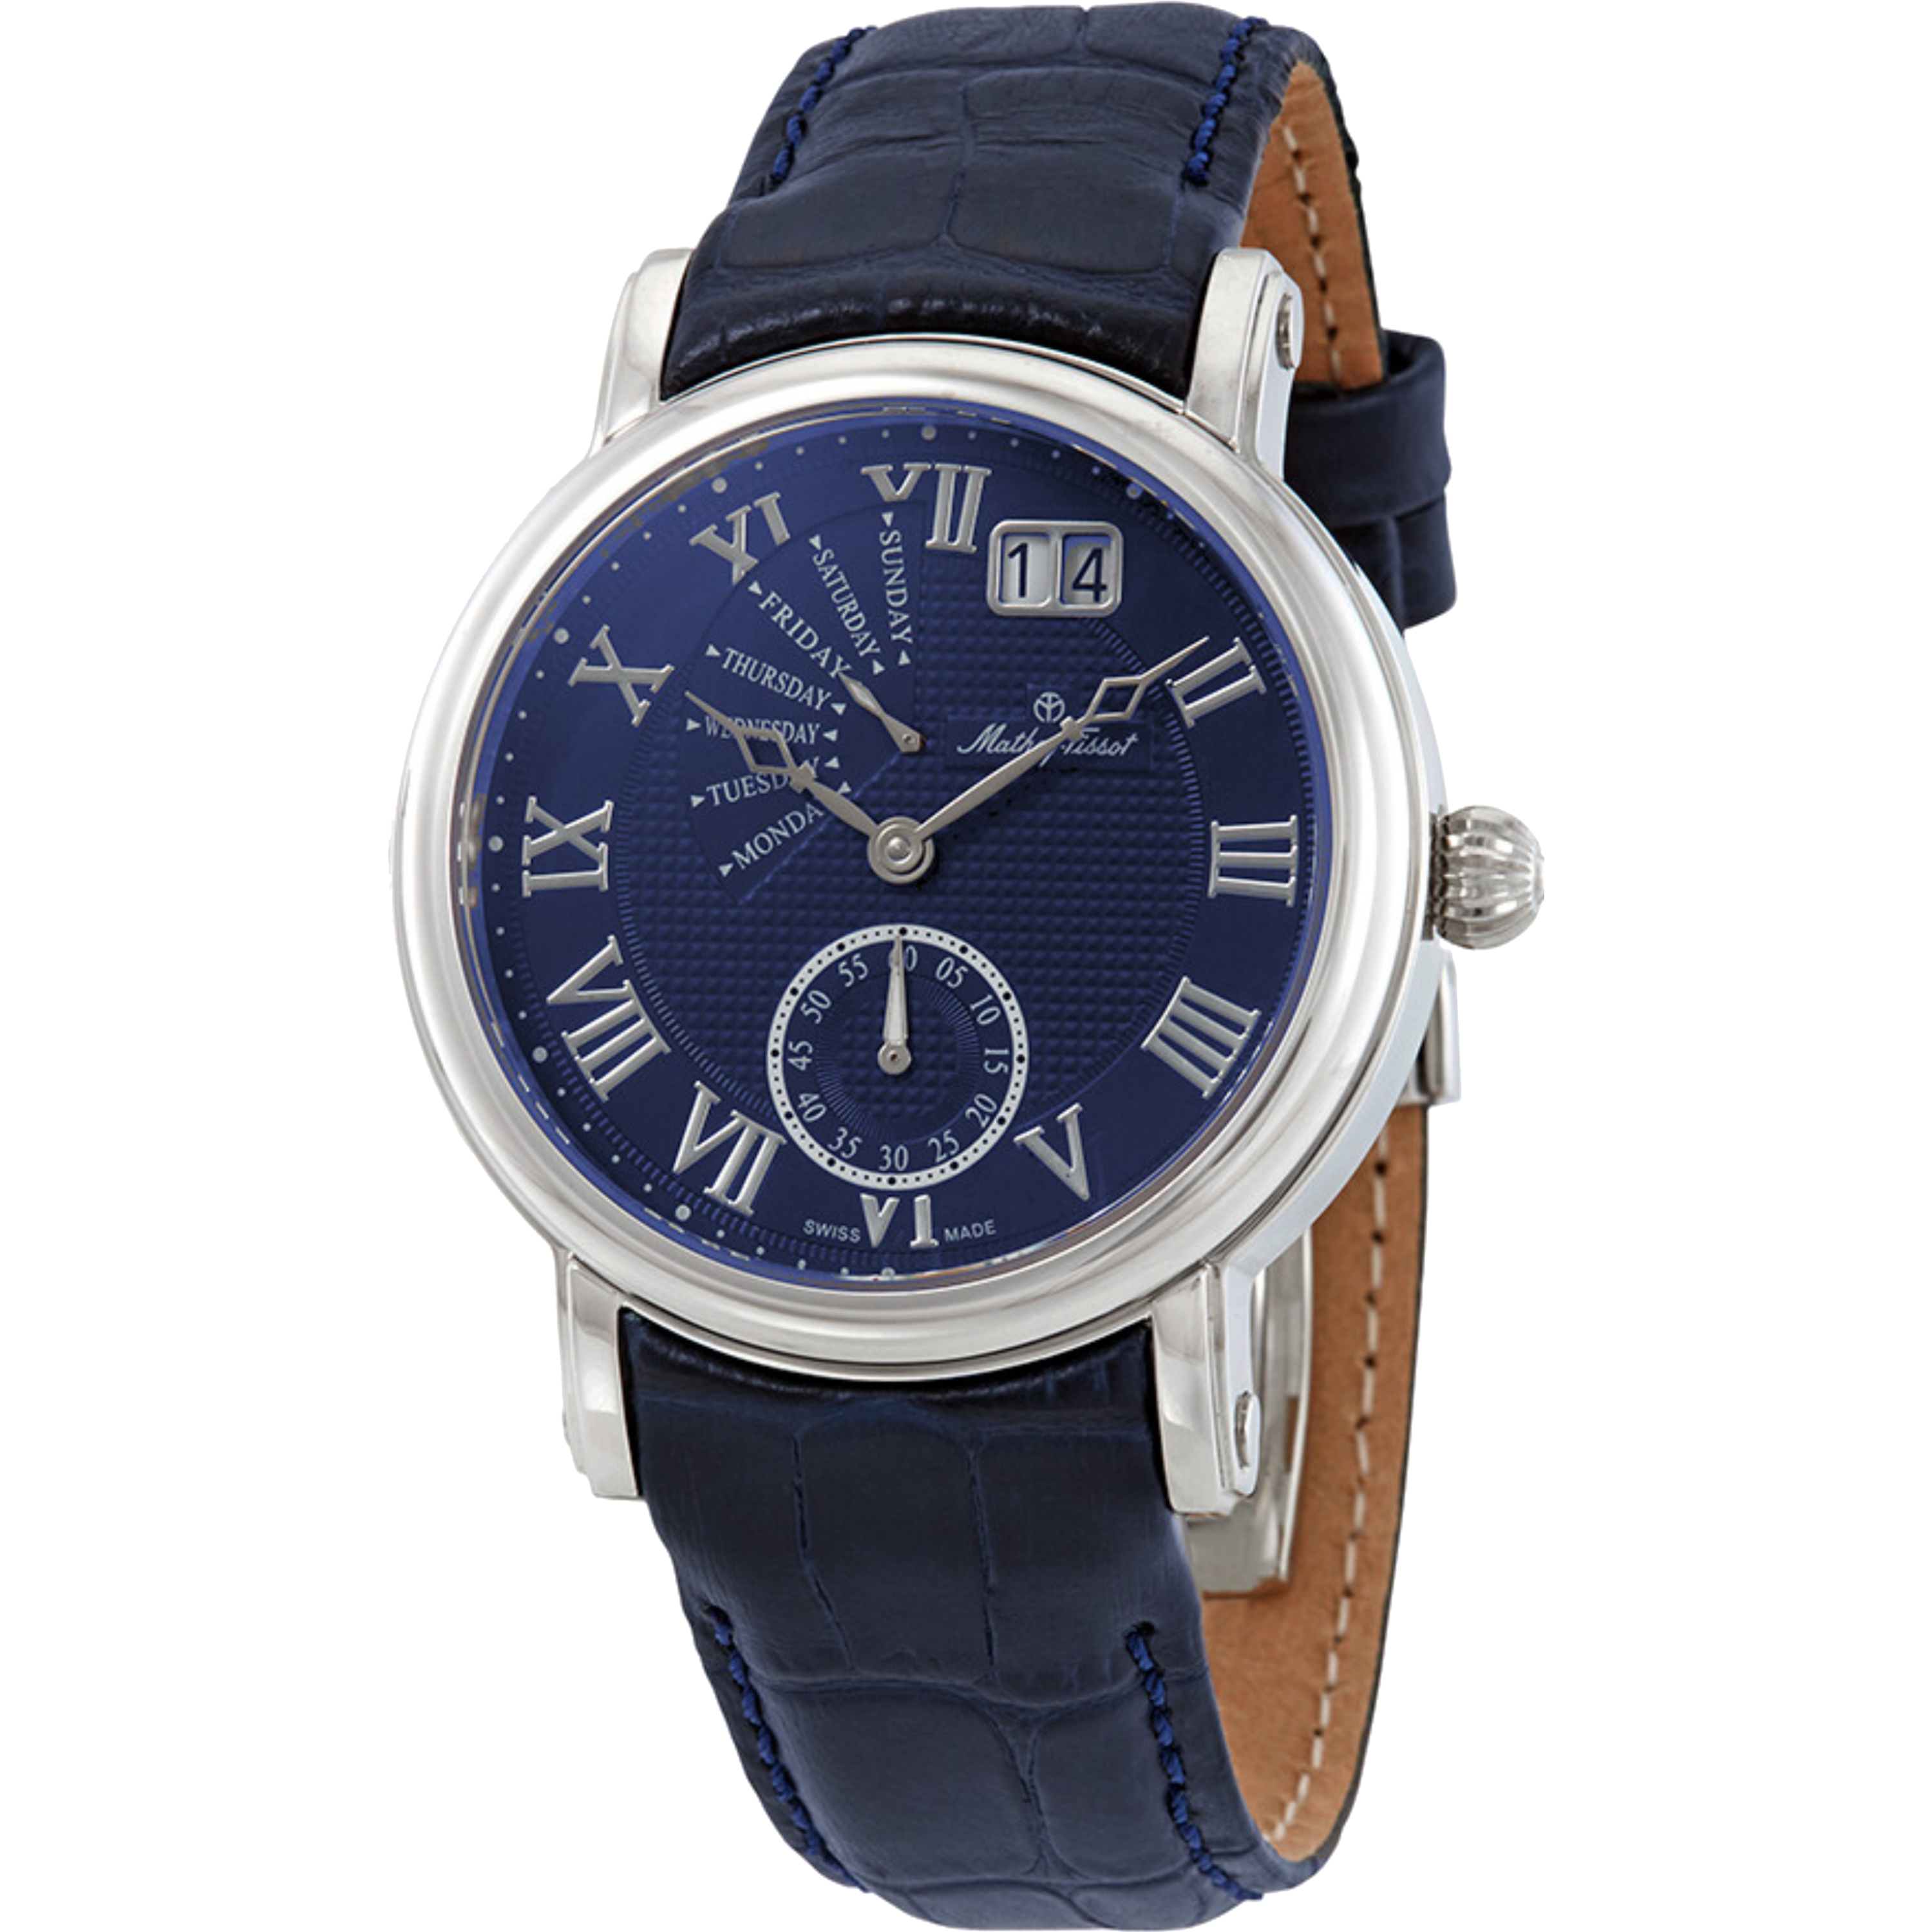 שעון יד לגבר Mathey Tissot H7020ABU 43mm צבע כחול/עור כחול/זכוכית ספיר/רטרוגרד - אחריות לשנתיים